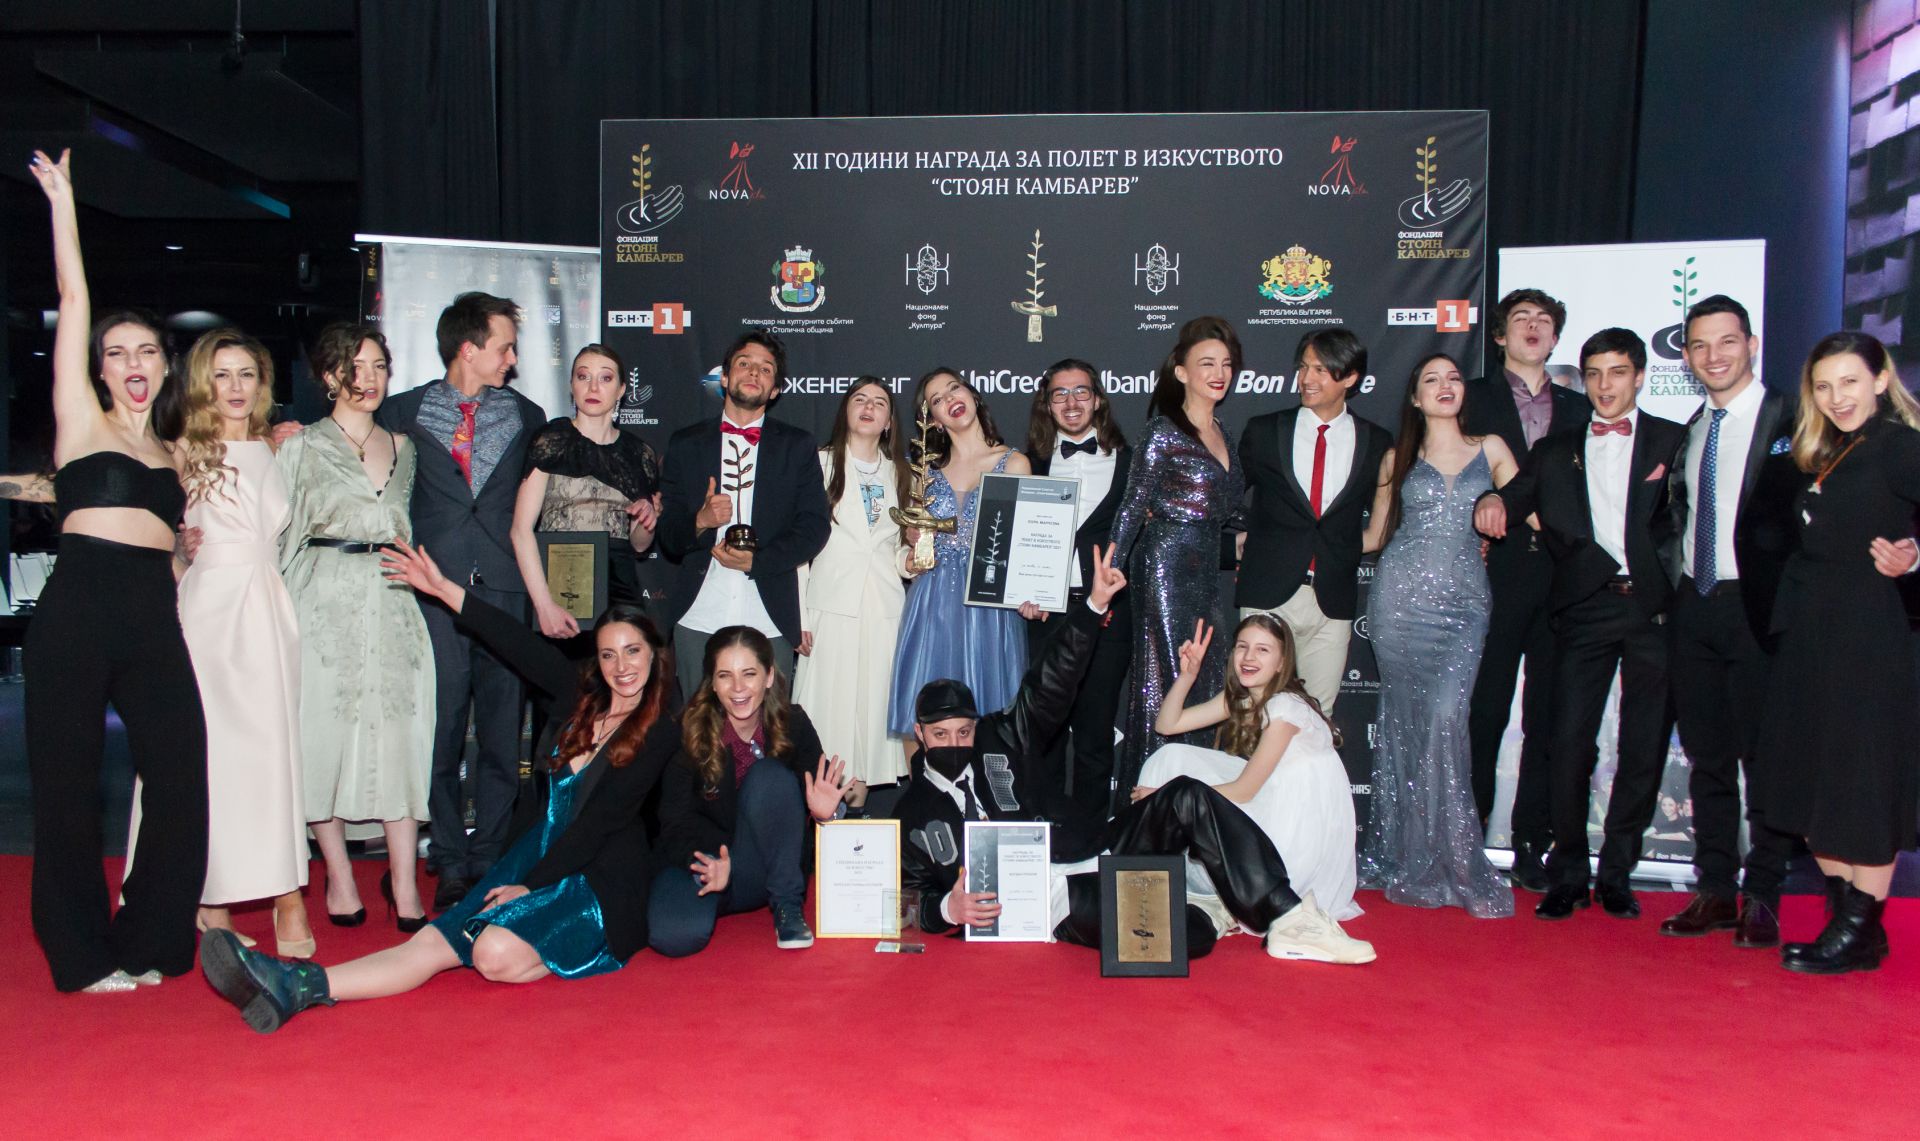 Финалистите на Наградите за Полет в изкуството и Кино 355 за 2021 година на Фондация "Стоян Камбарев" на официалната церемония по награждаването